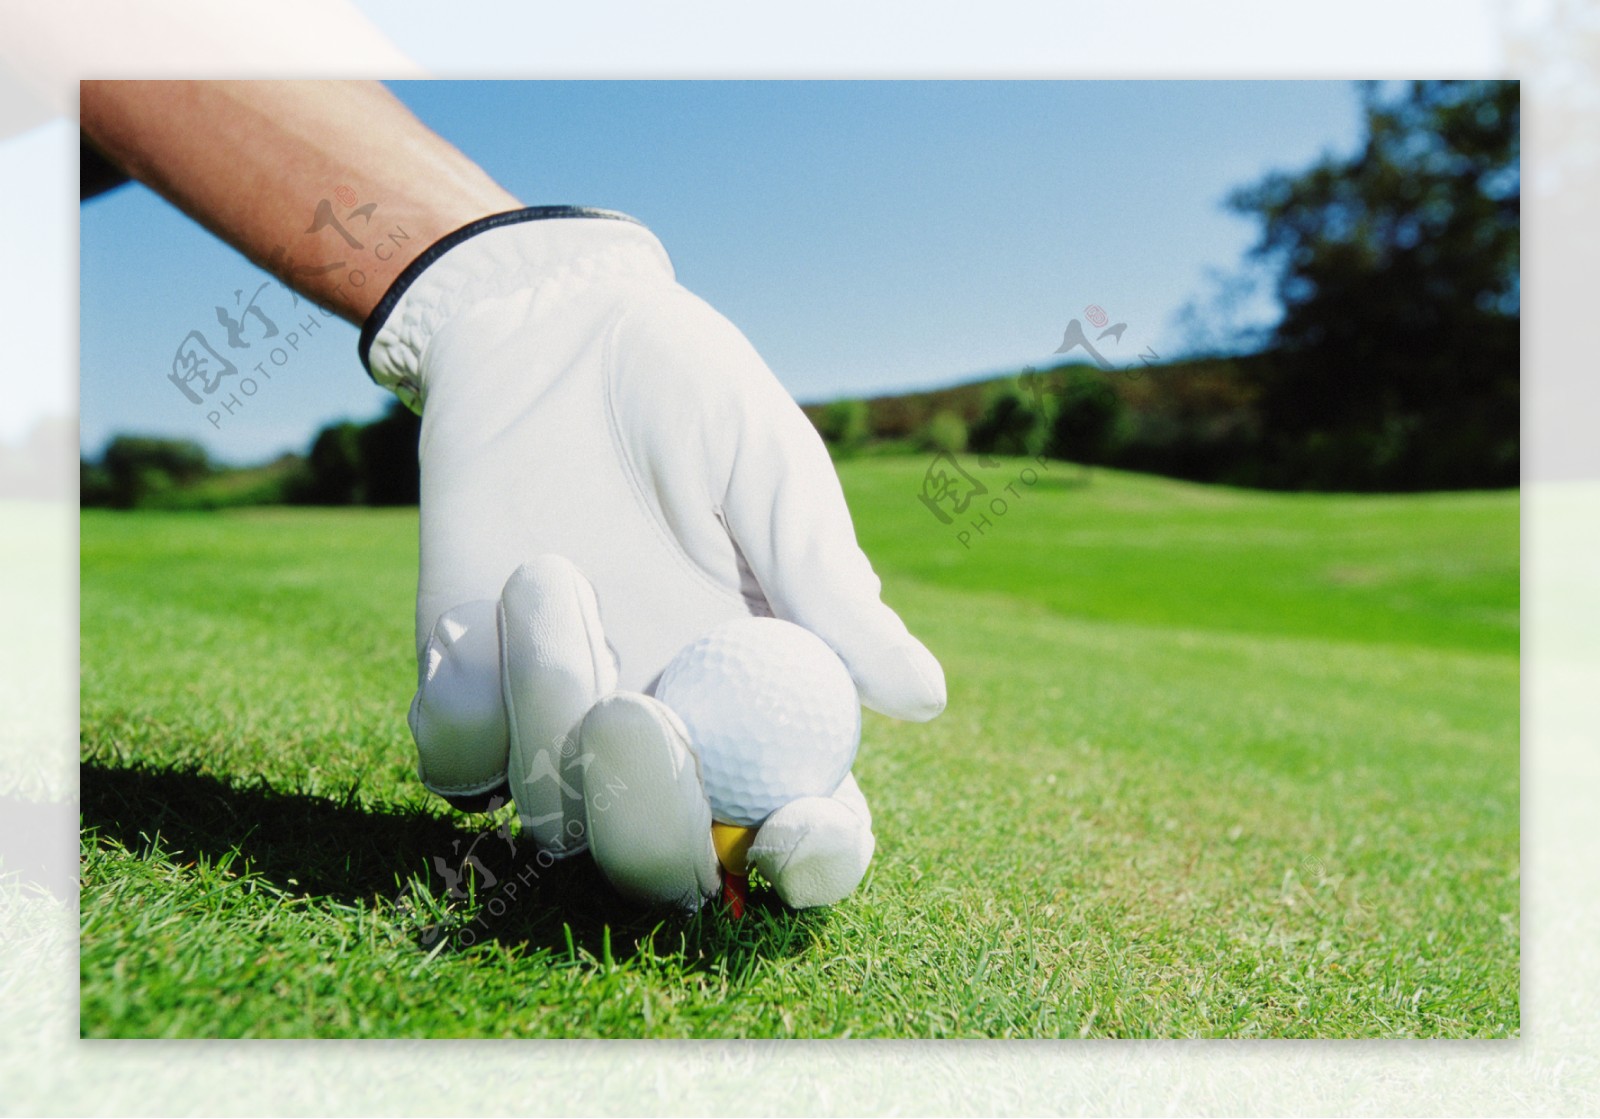 高尔夫户外运动高尔夫球全方位平面设计素材辞典白手套手套